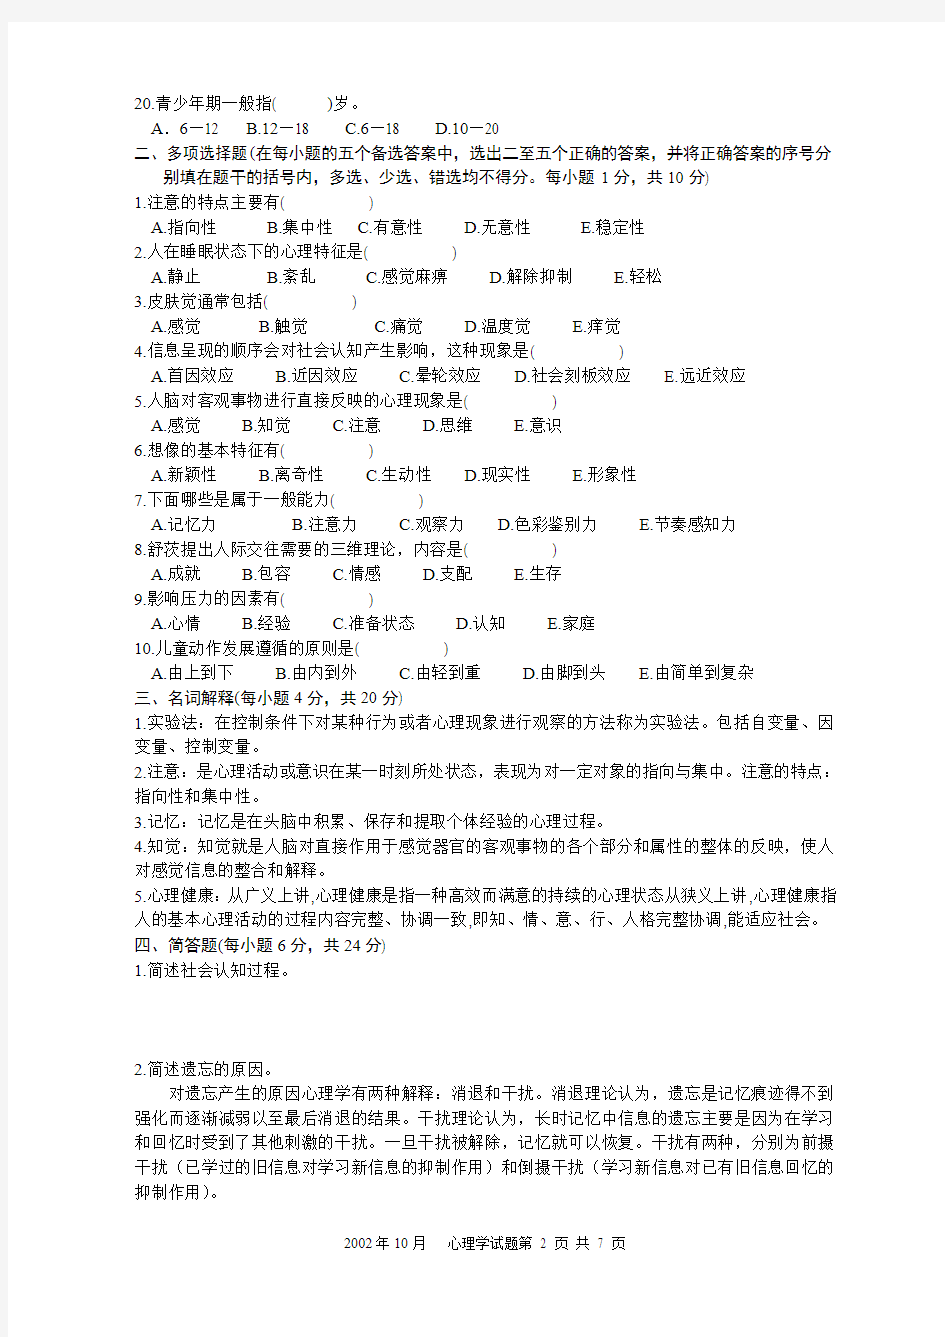 浙江省2002年10月中学教师资格认定培训考试